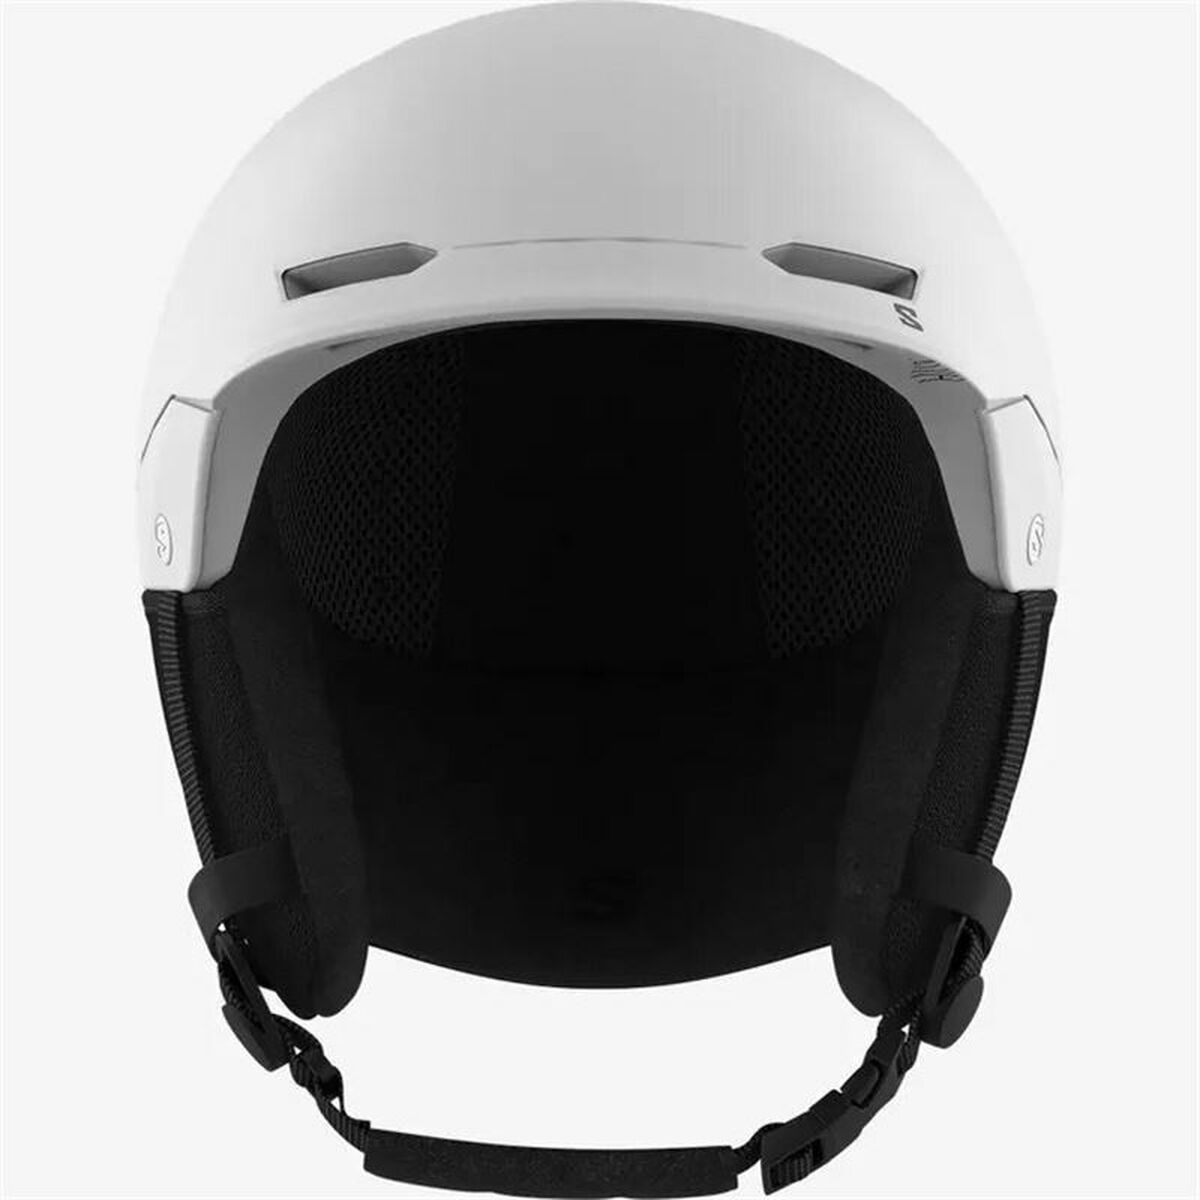 Ski Helmet  Snowboarding Salomon  Husk  White Black Unisex S 56-60 cm 56-58